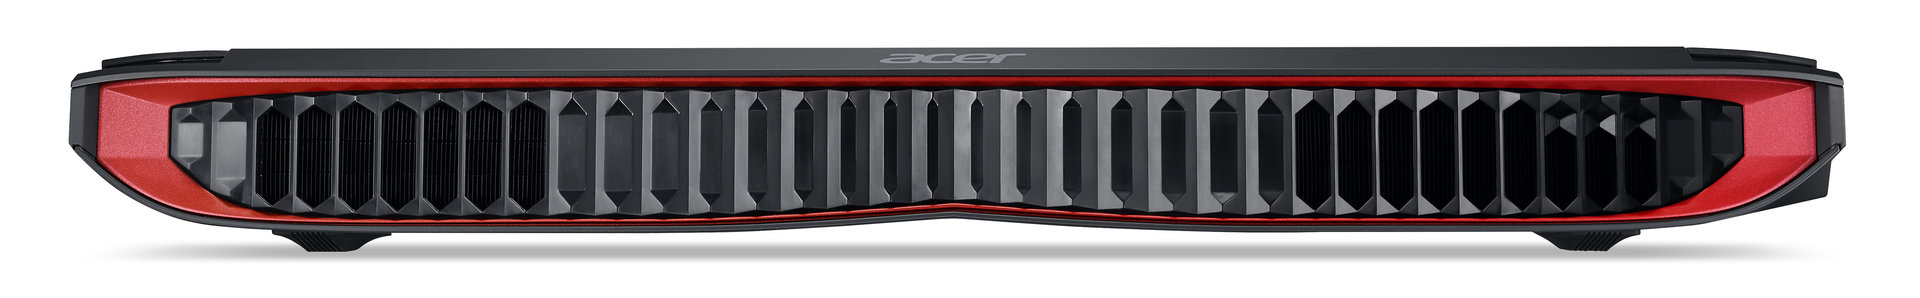 Acer Predator 17 X